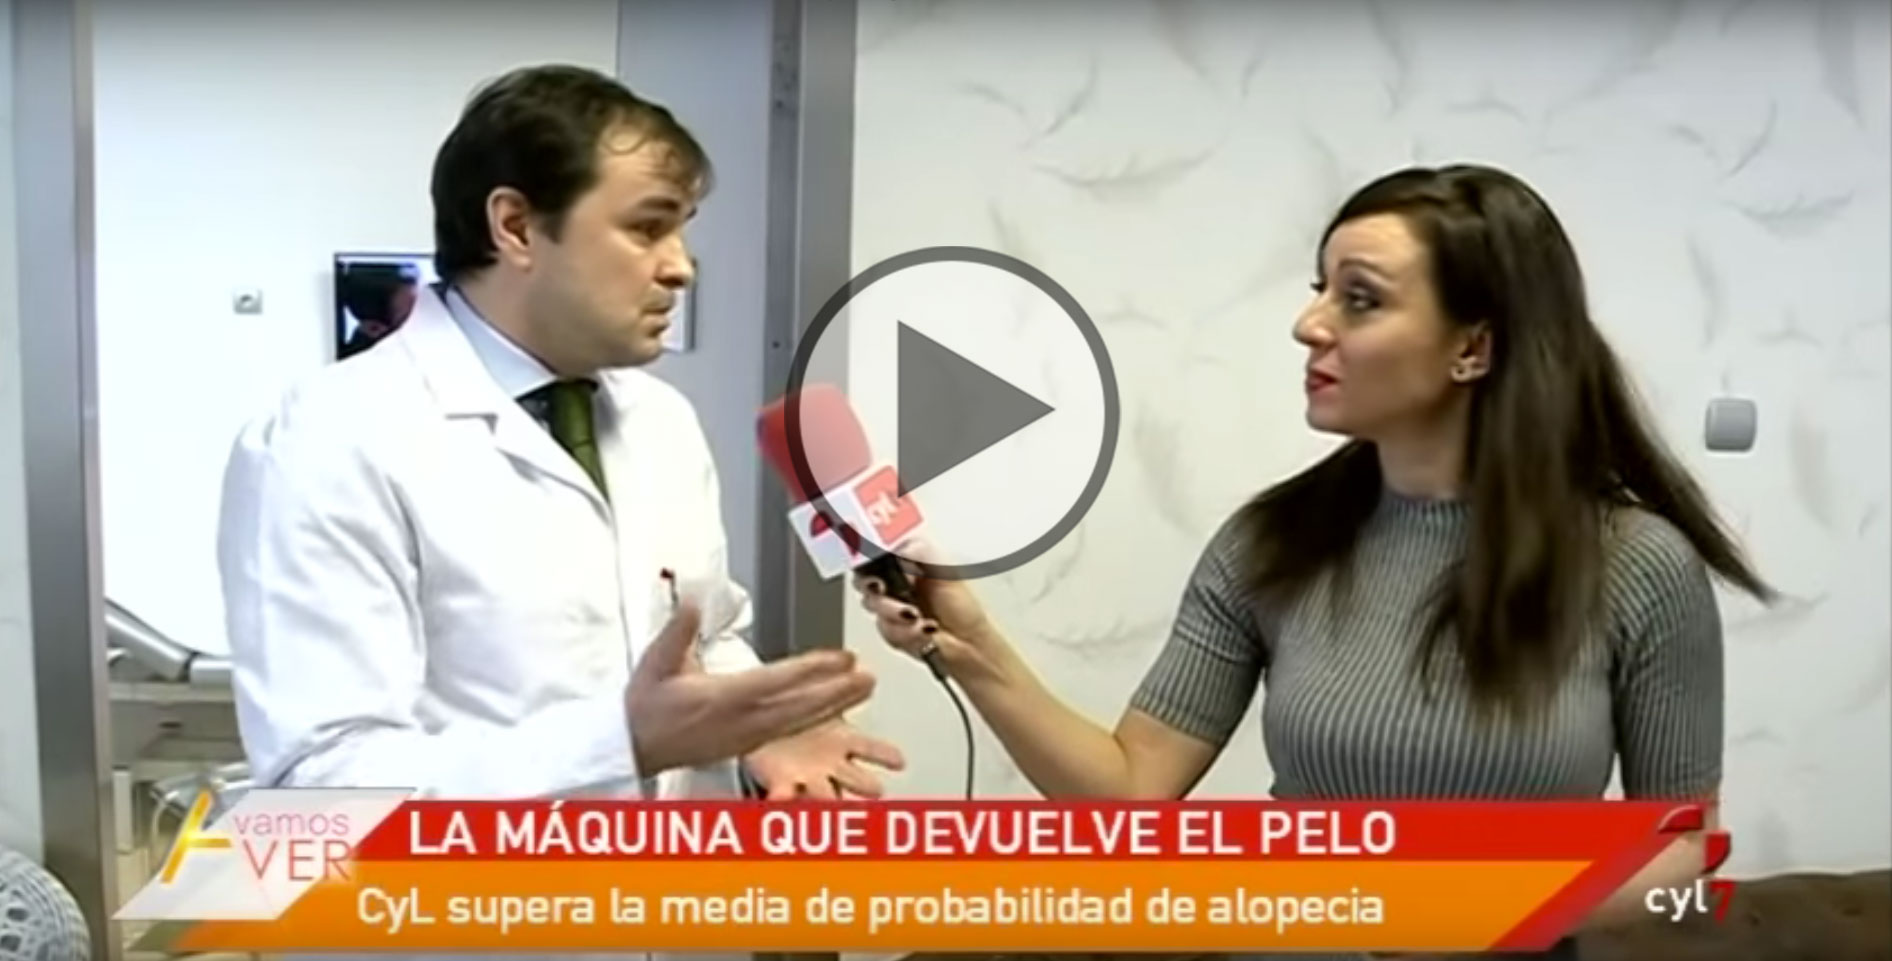 Instituto de Cirugía Estética en Televisión Castilla y León